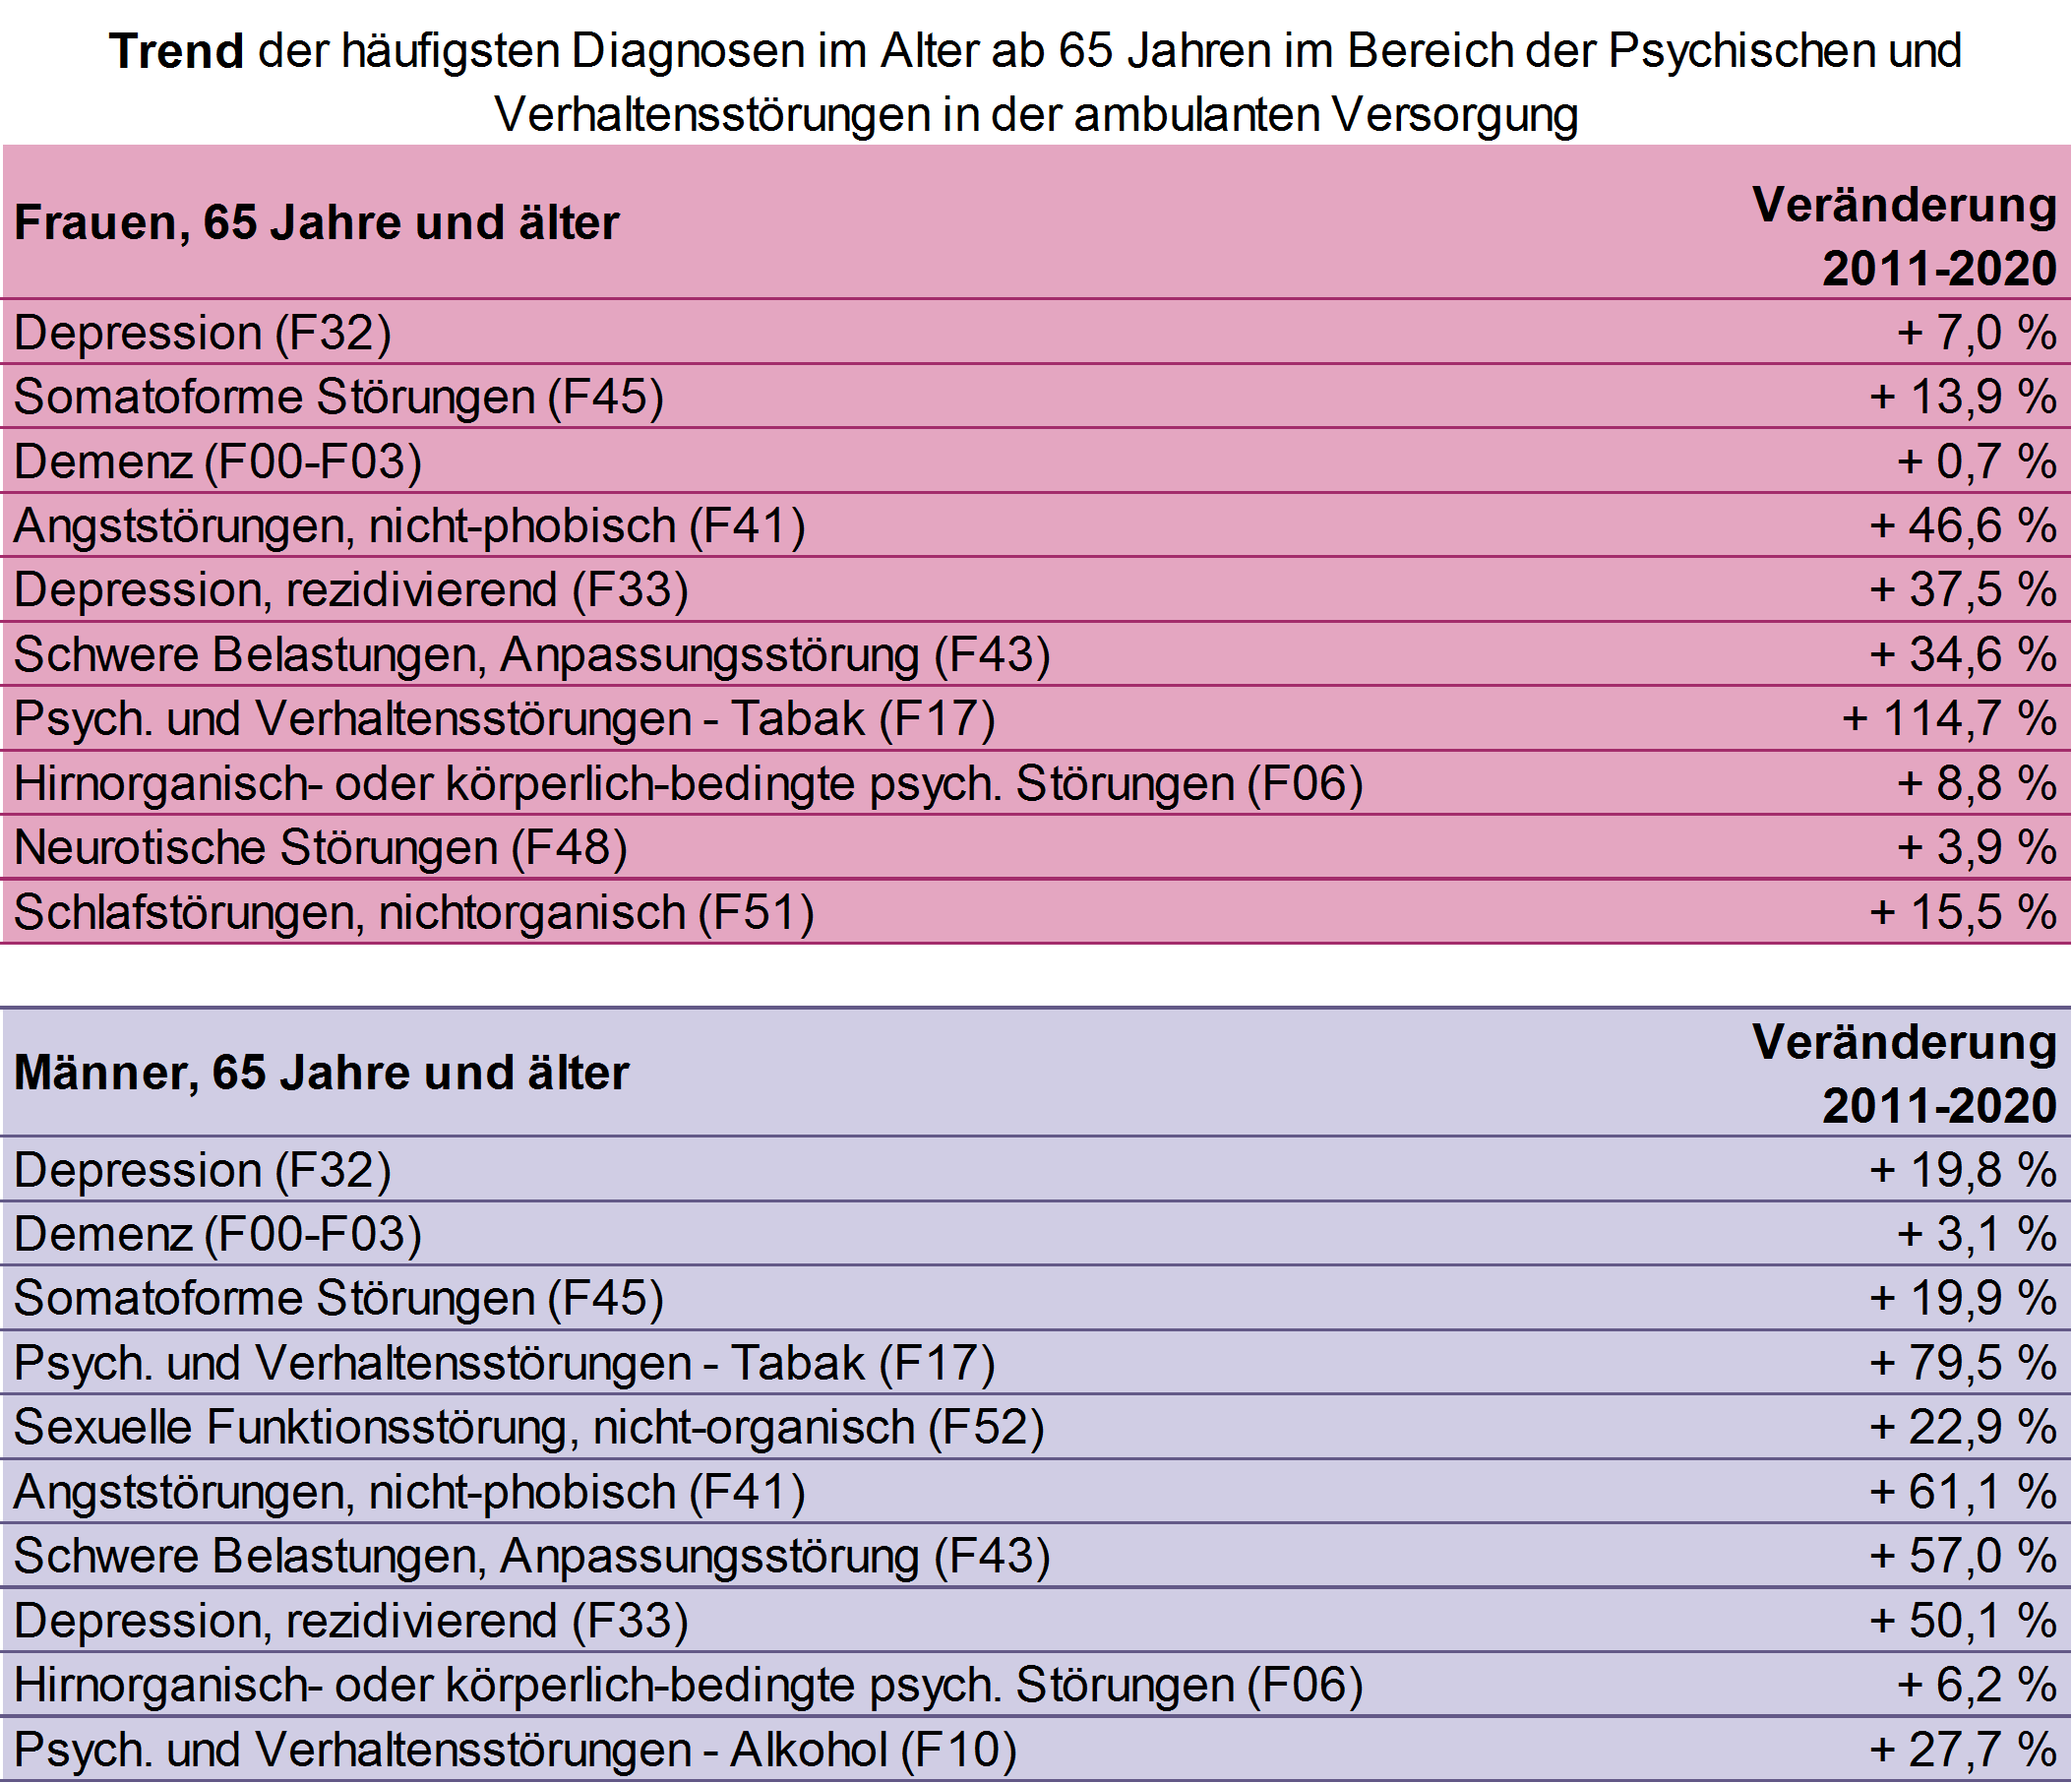 Veränderung der ambulanten Behandlungshäufigkeit der häufigsten Psychischen und Verhaltensstörungen bei Menschen ab 65 Jahren, NRW, 2011 bis 2020